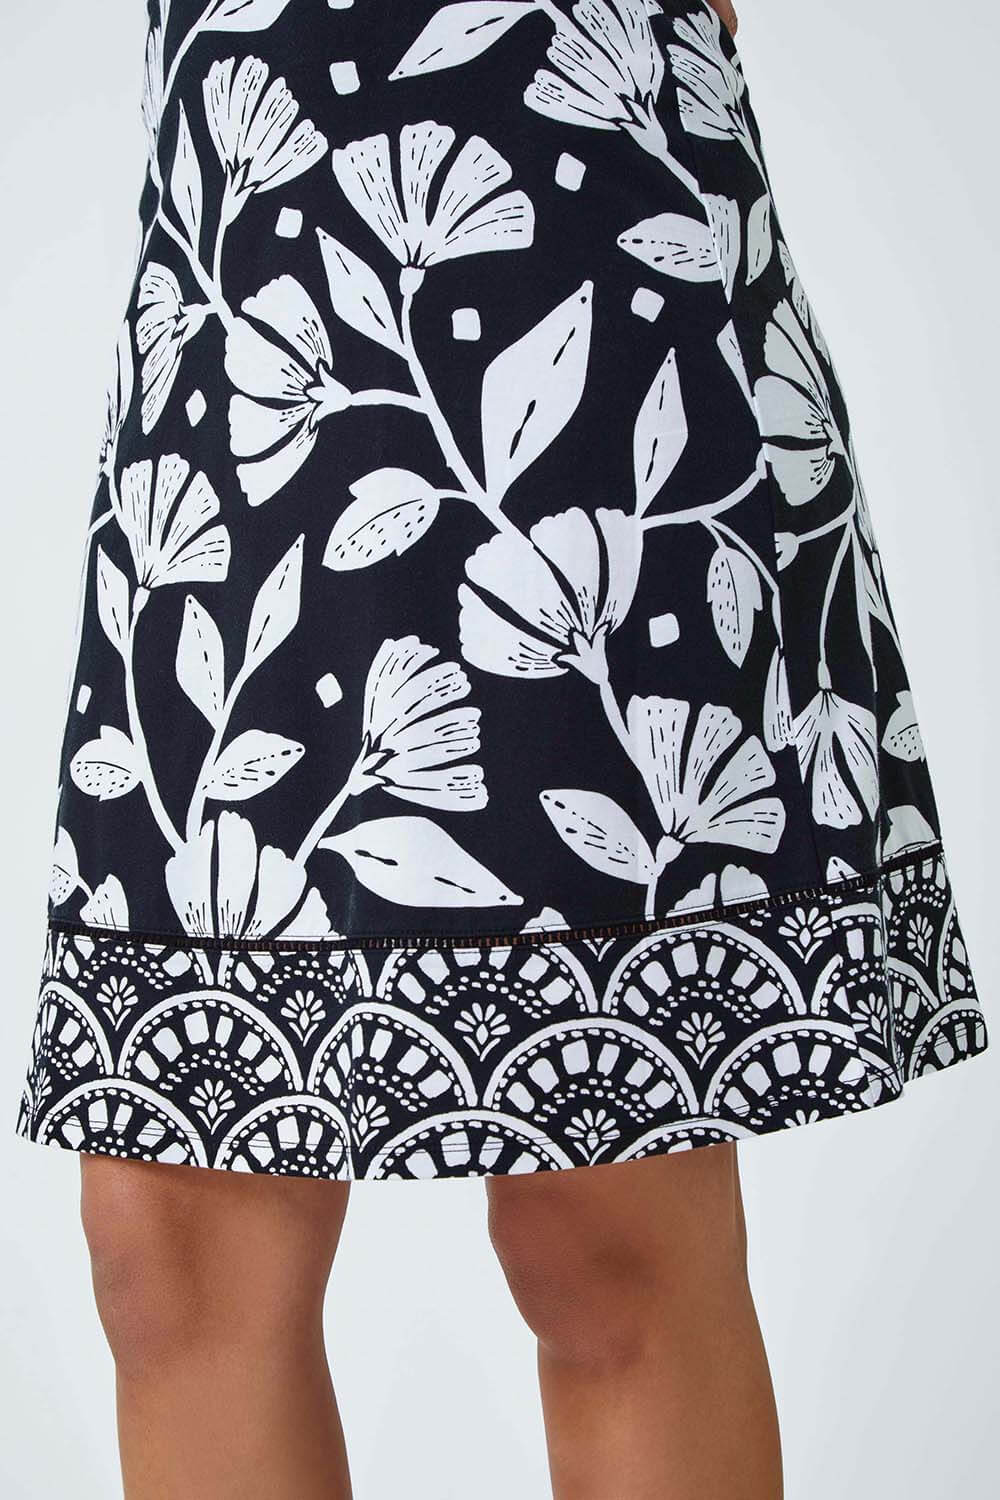 Black Cotton Blend Floral Stretch Skirt, Image 5 of 5